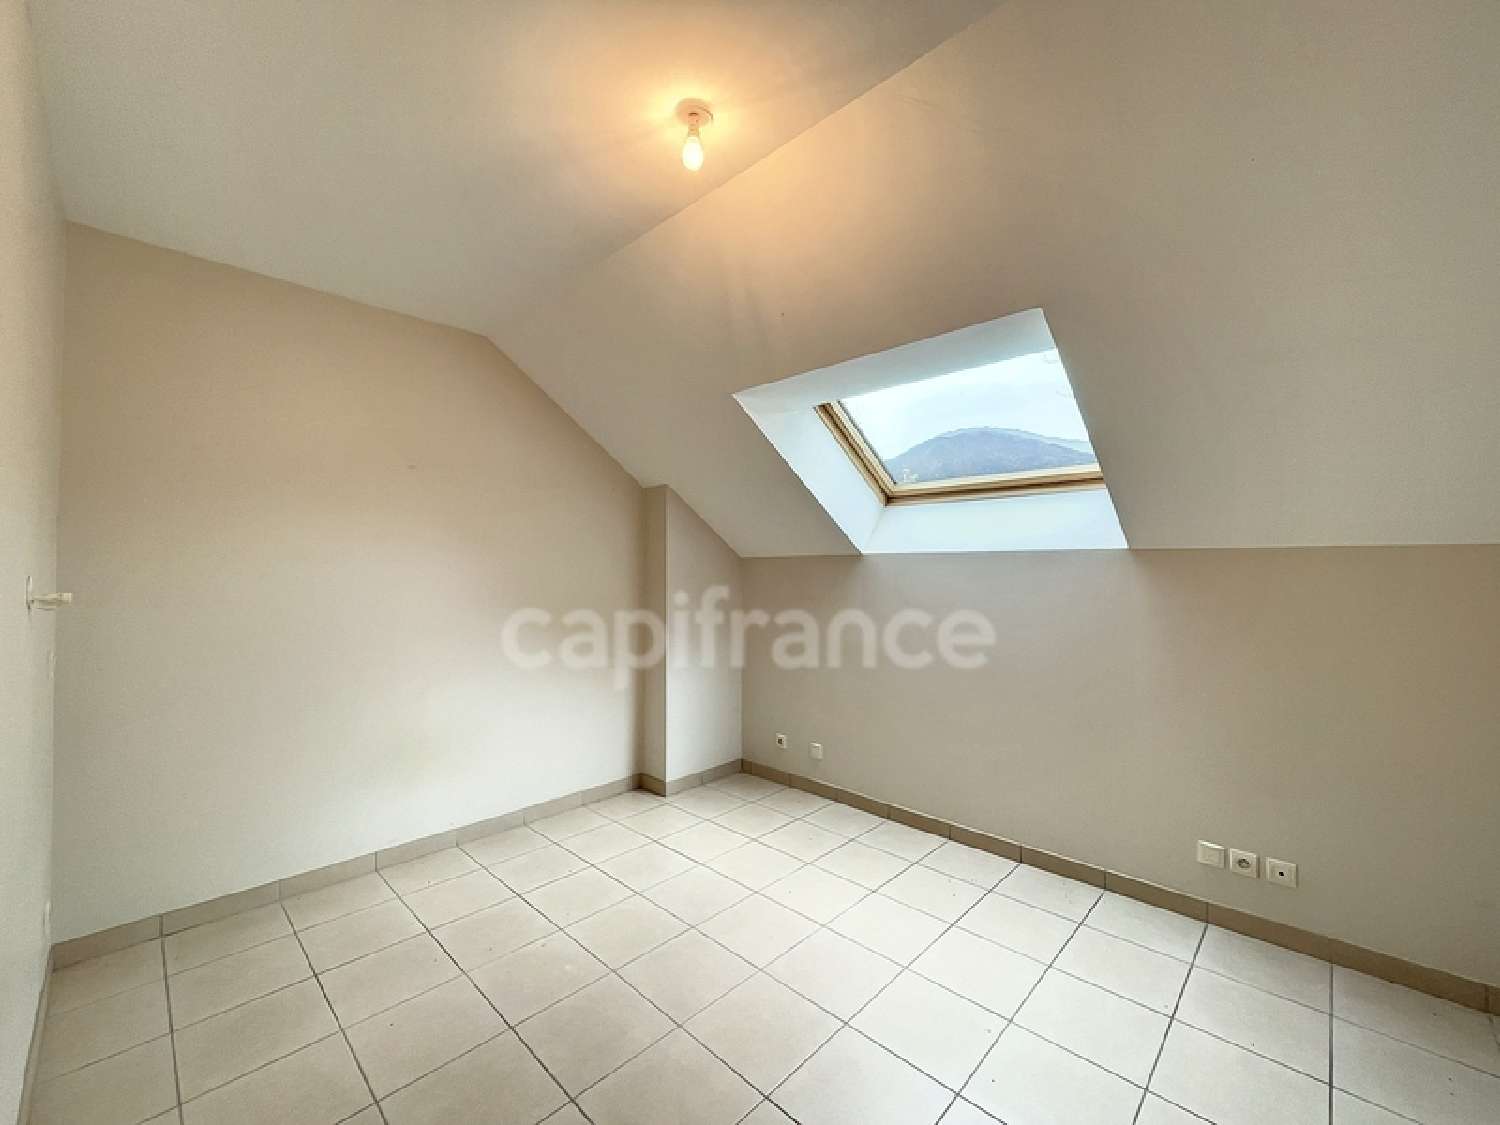  for sale apartment Vimines Savoie 4